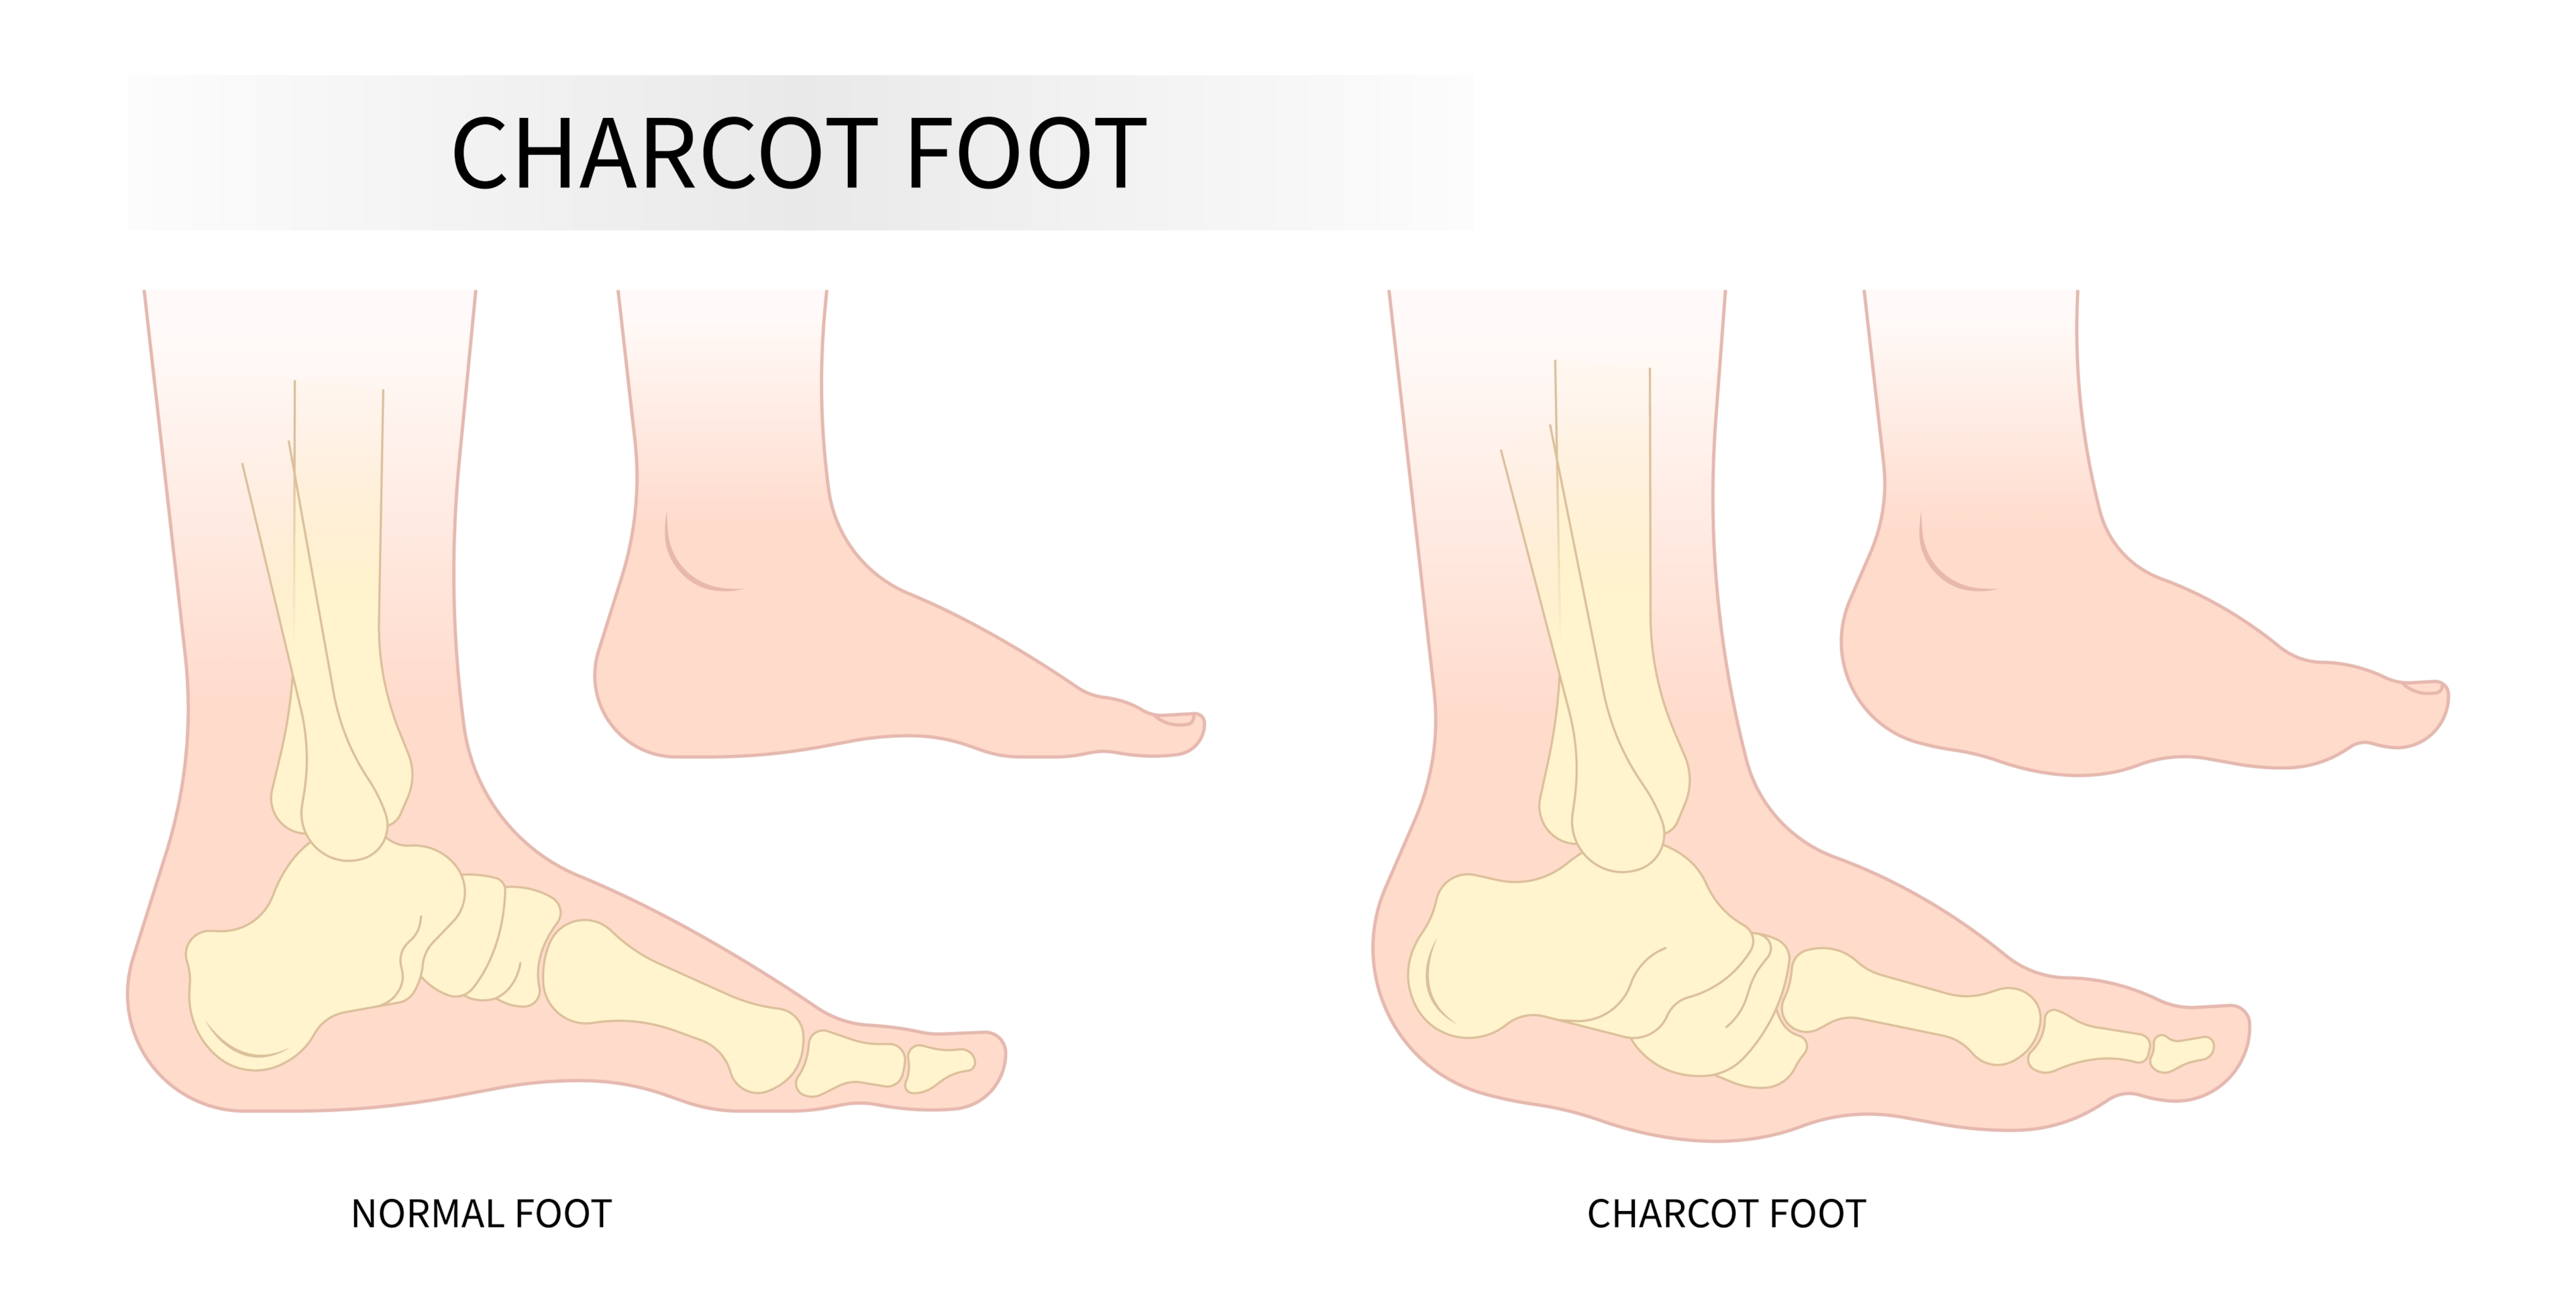 Charcot foot